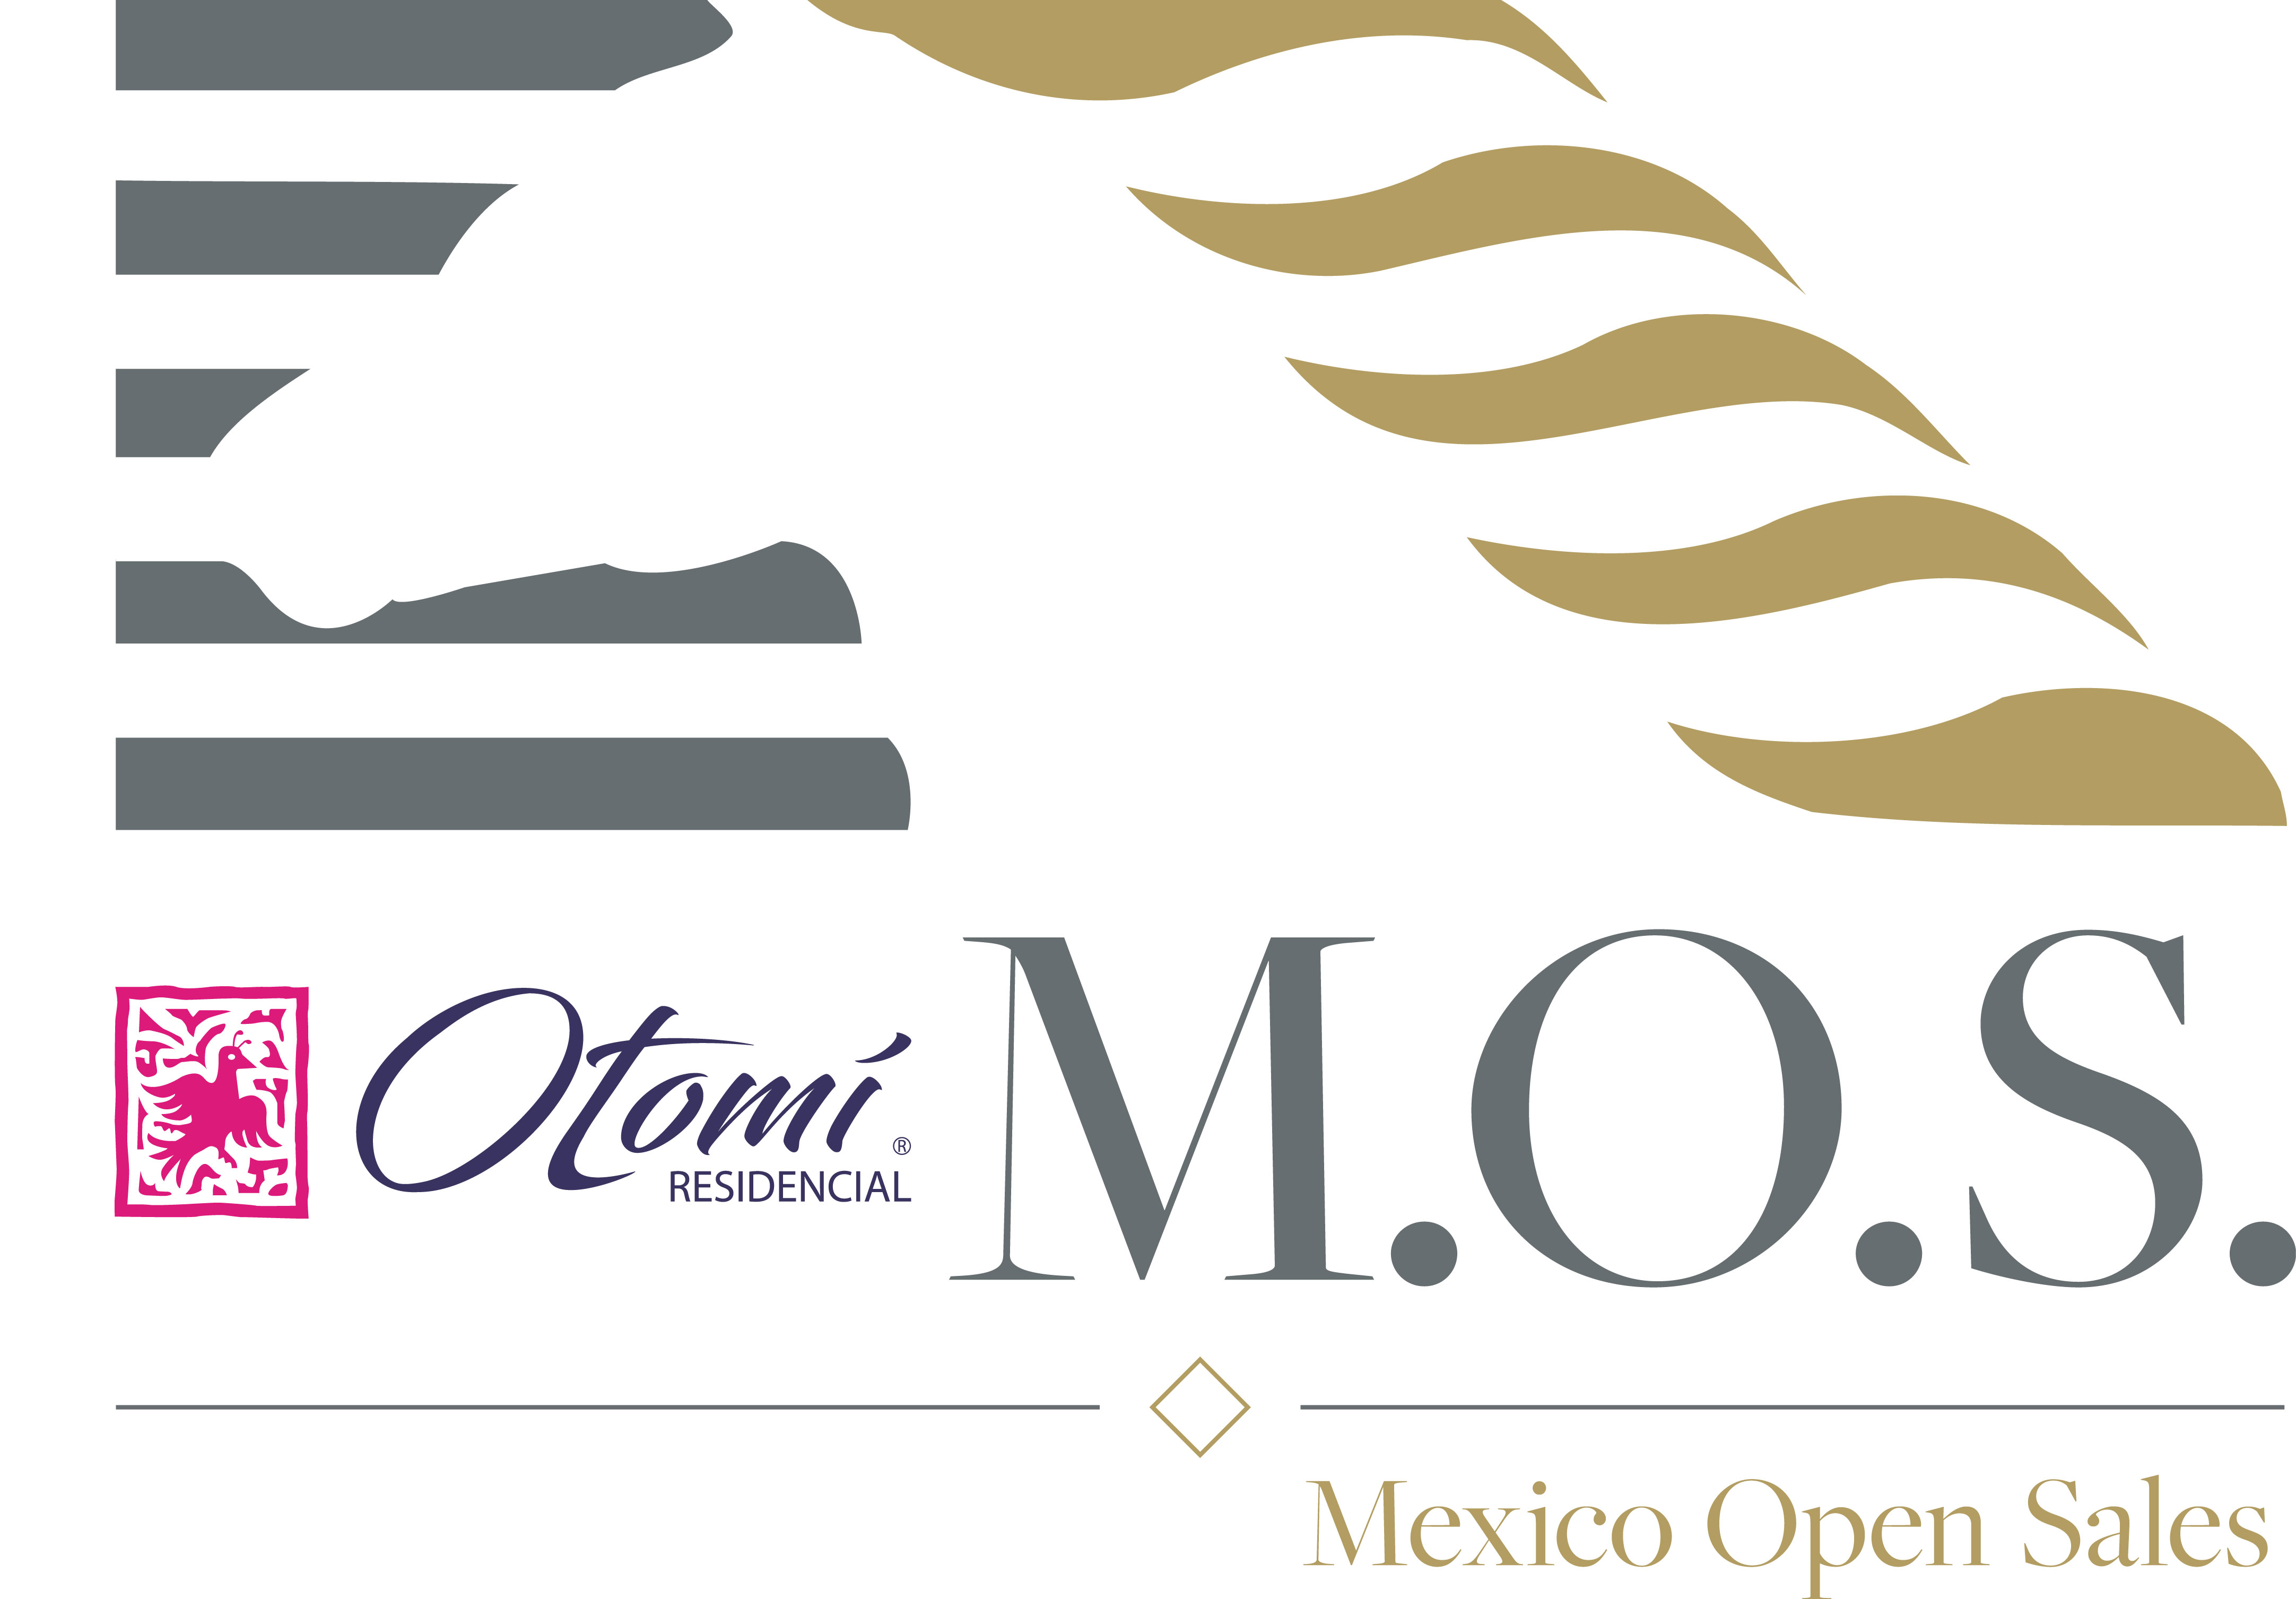 Mexico Open Sales